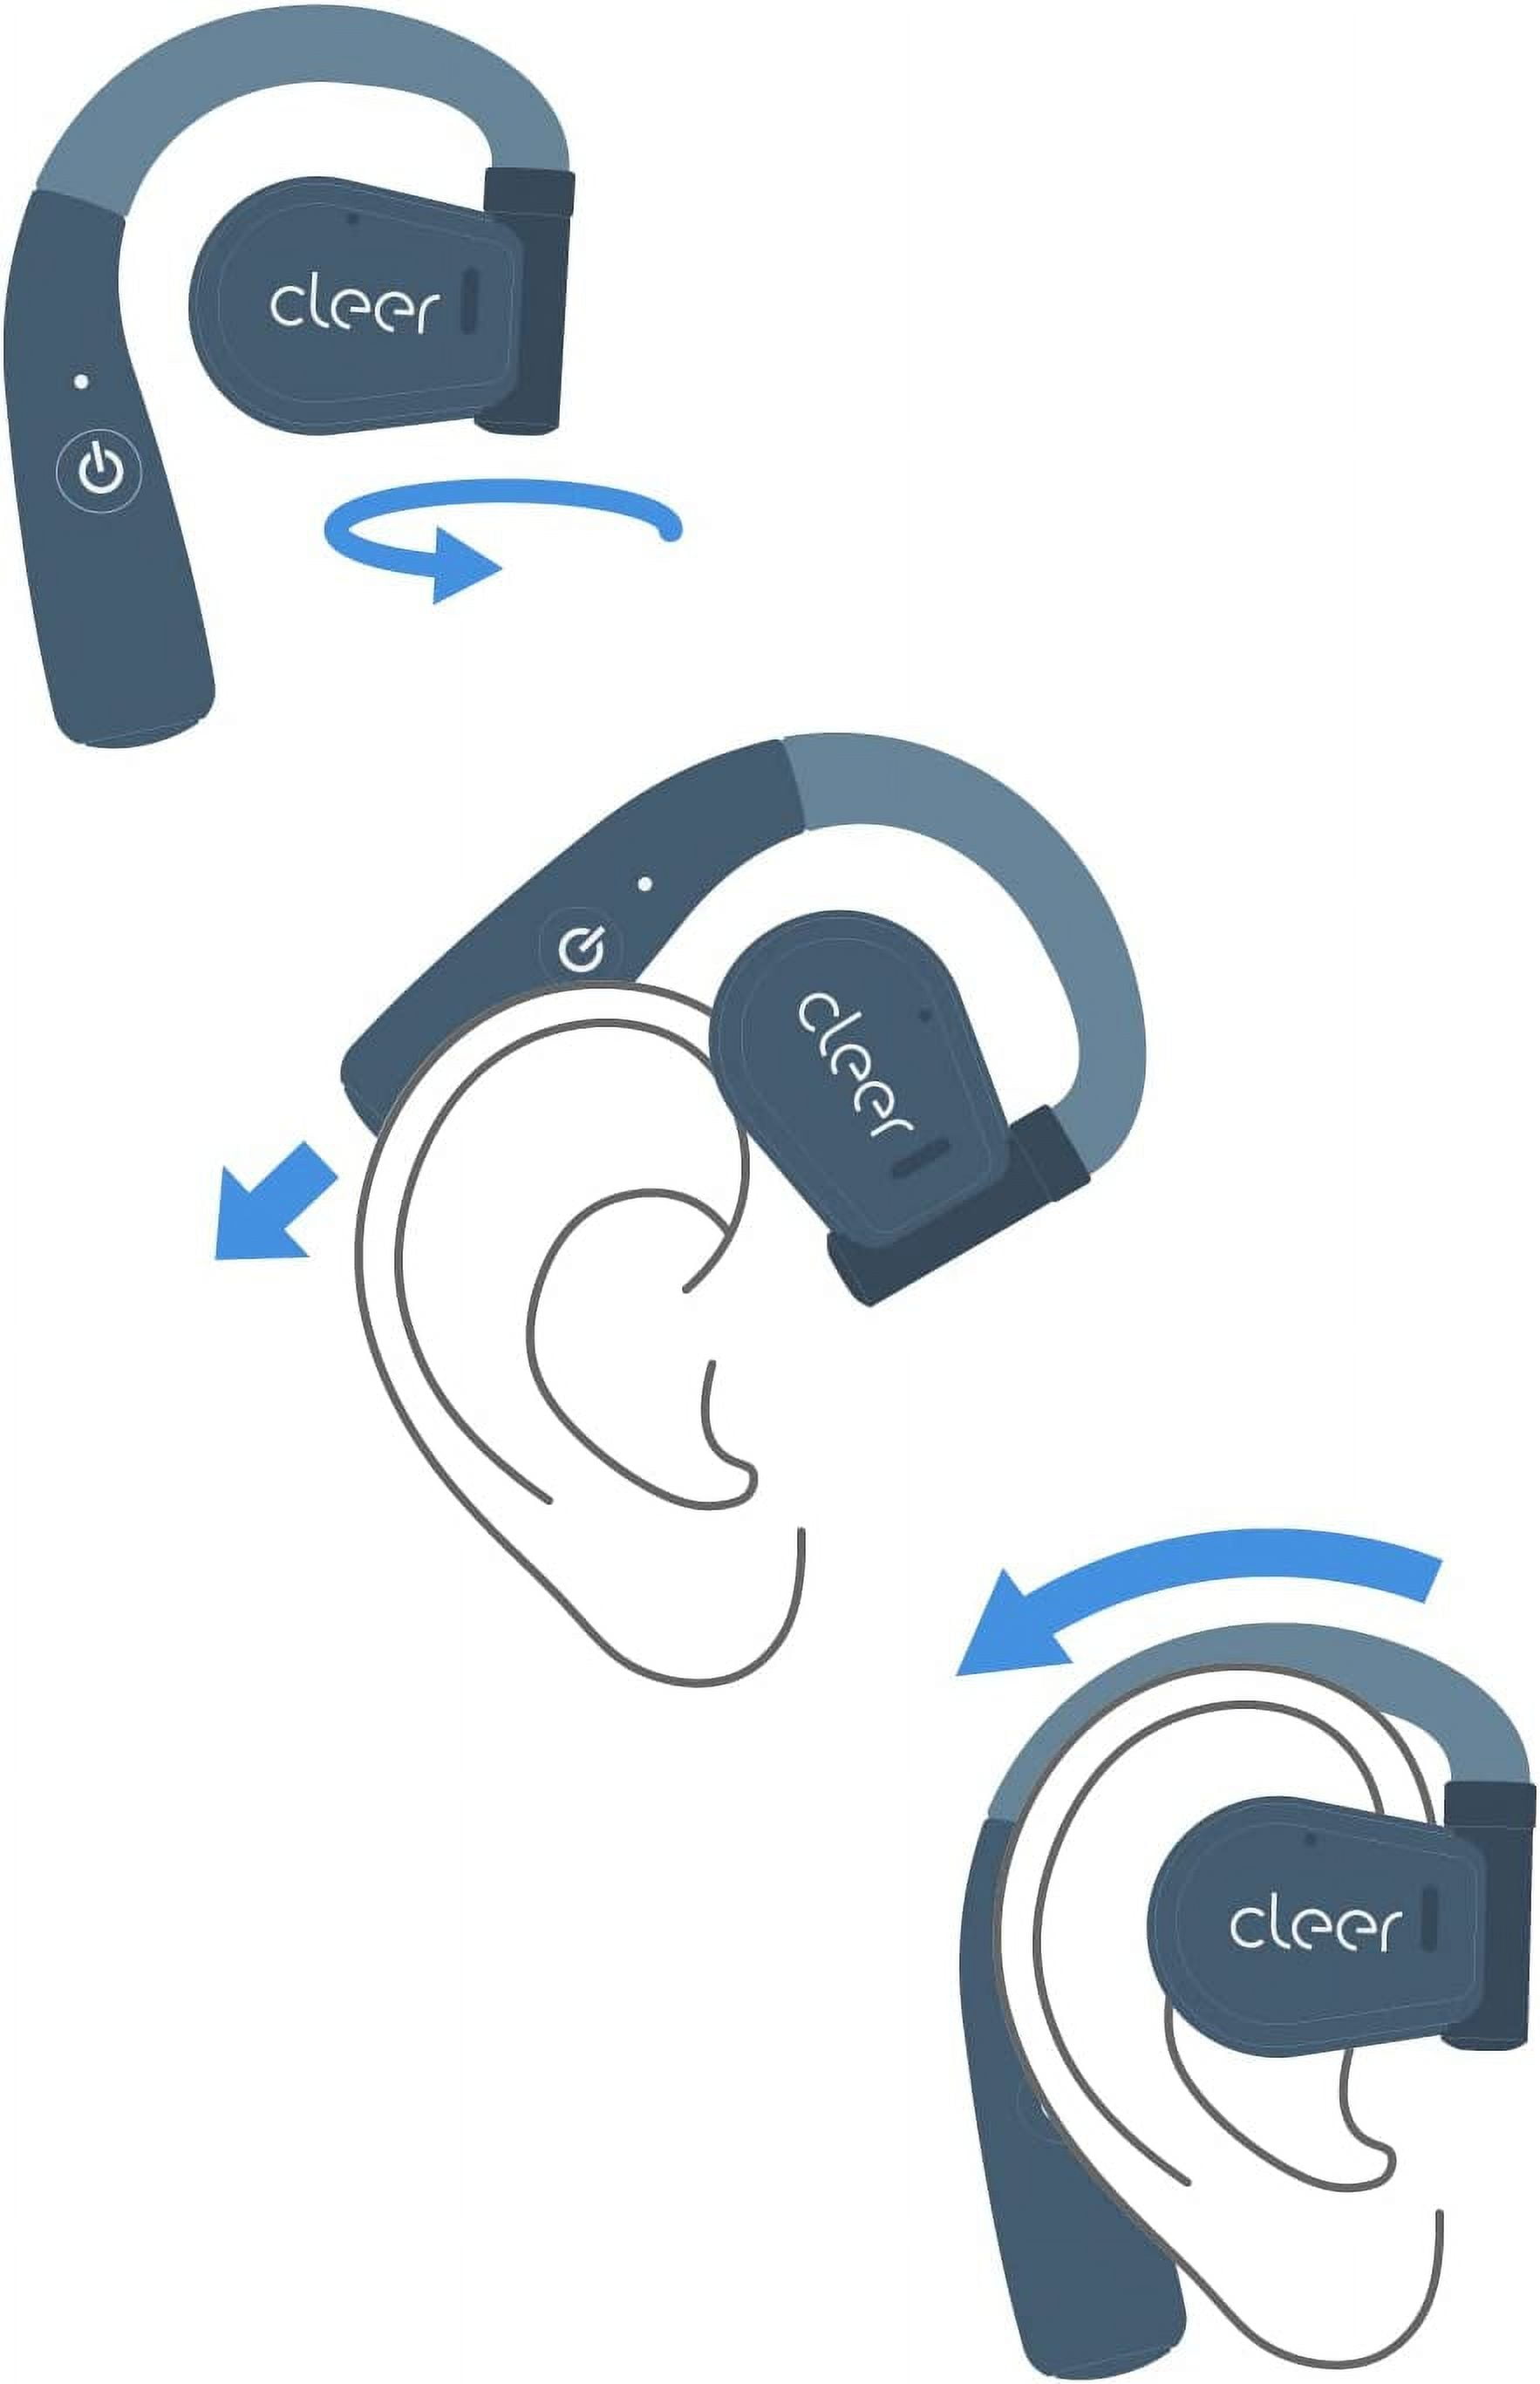 Cleer Audio ARC Open-Ear Ear Hook Design Flexible Hinge True